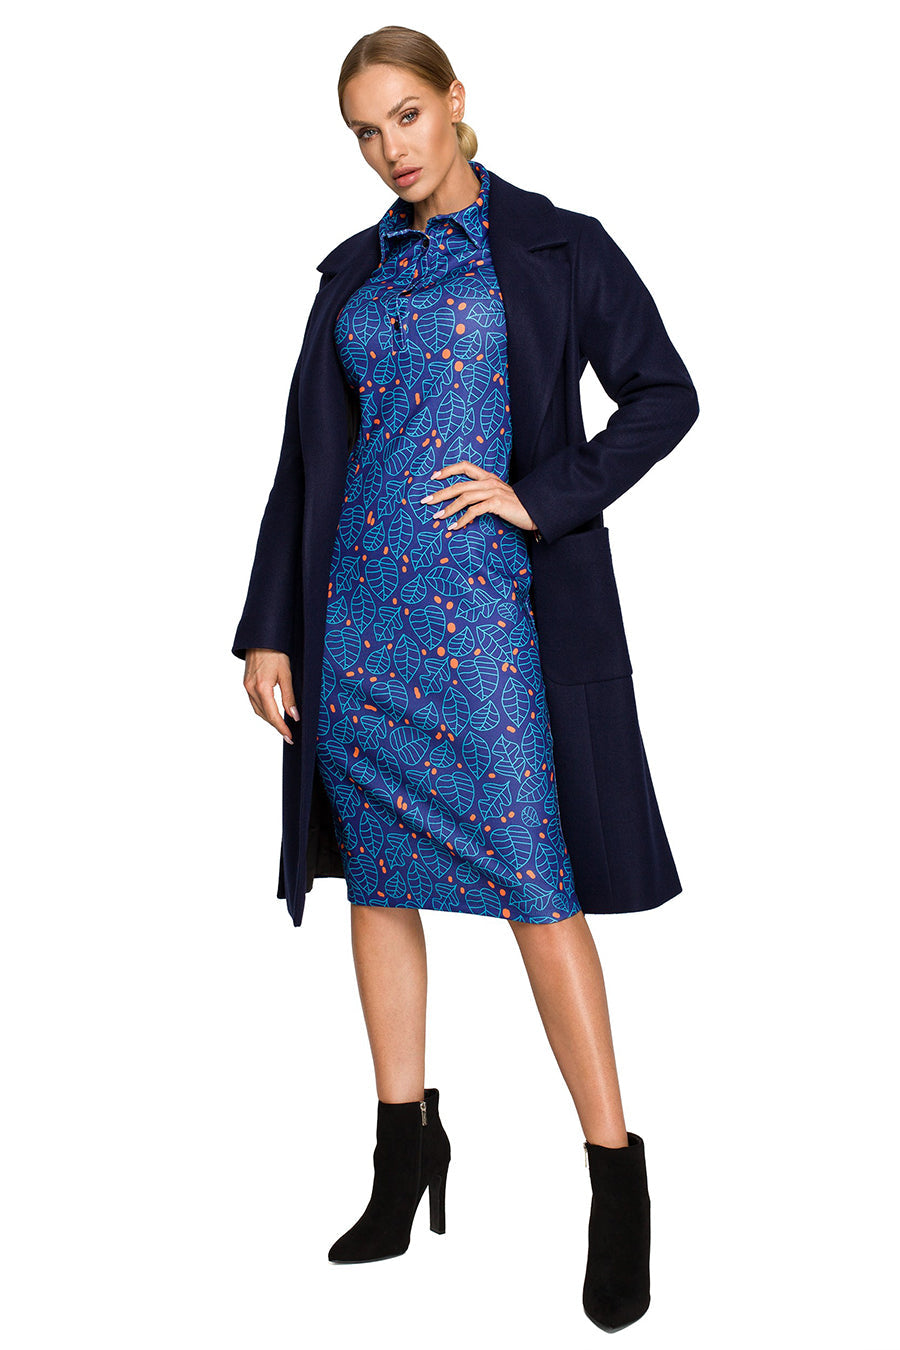 Γυναικείο παλτό Polymnia, Ναυτικό μπλε 3